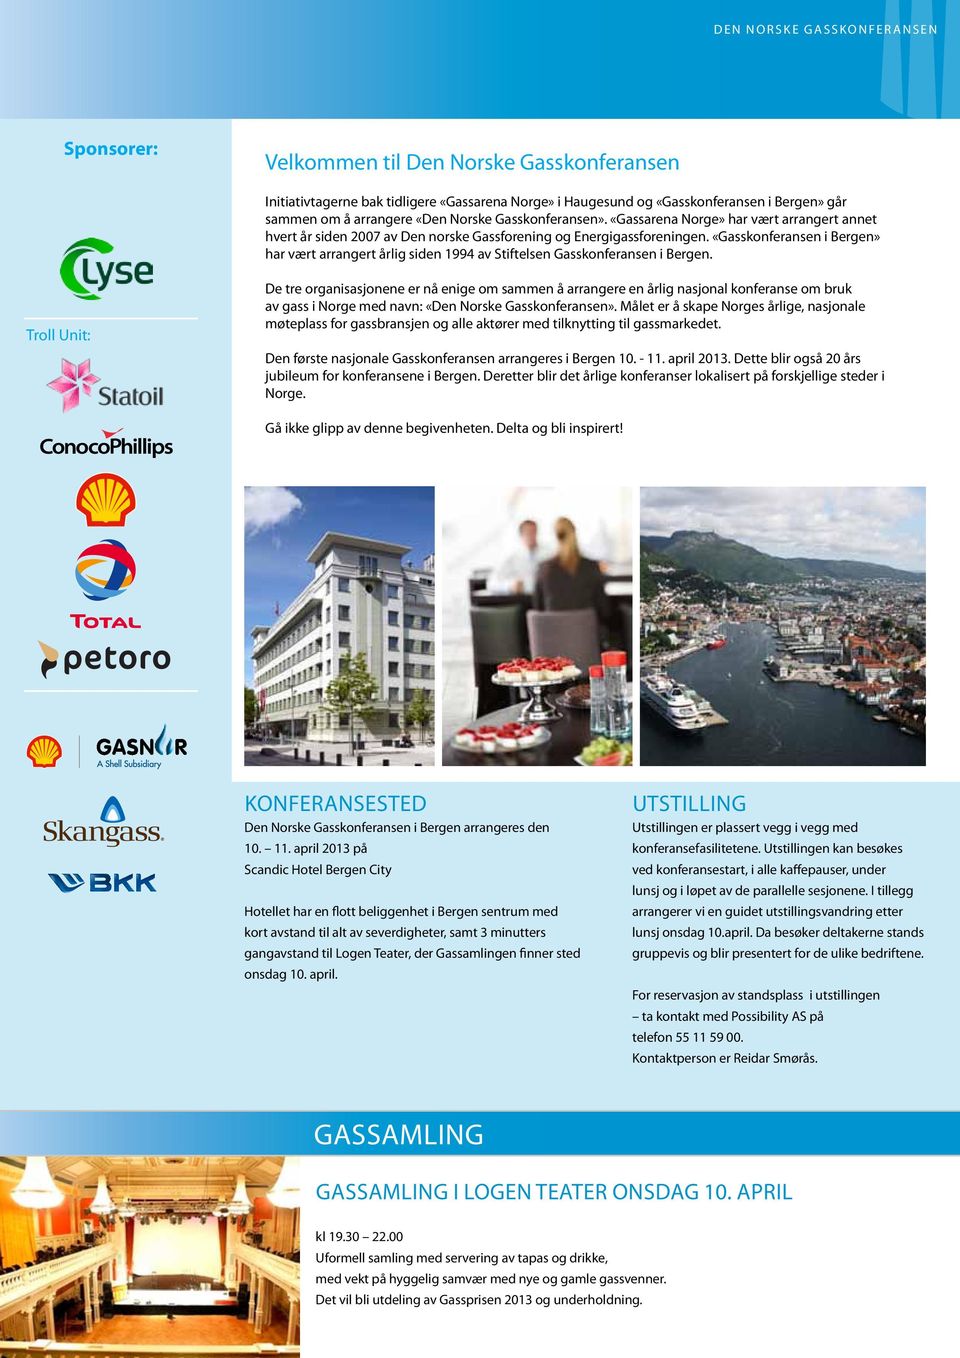 «Gasskonferansen i Bergen» har vært arrangert årlig siden 1994 av Stiftelsen Gasskonferansen i Bergen.